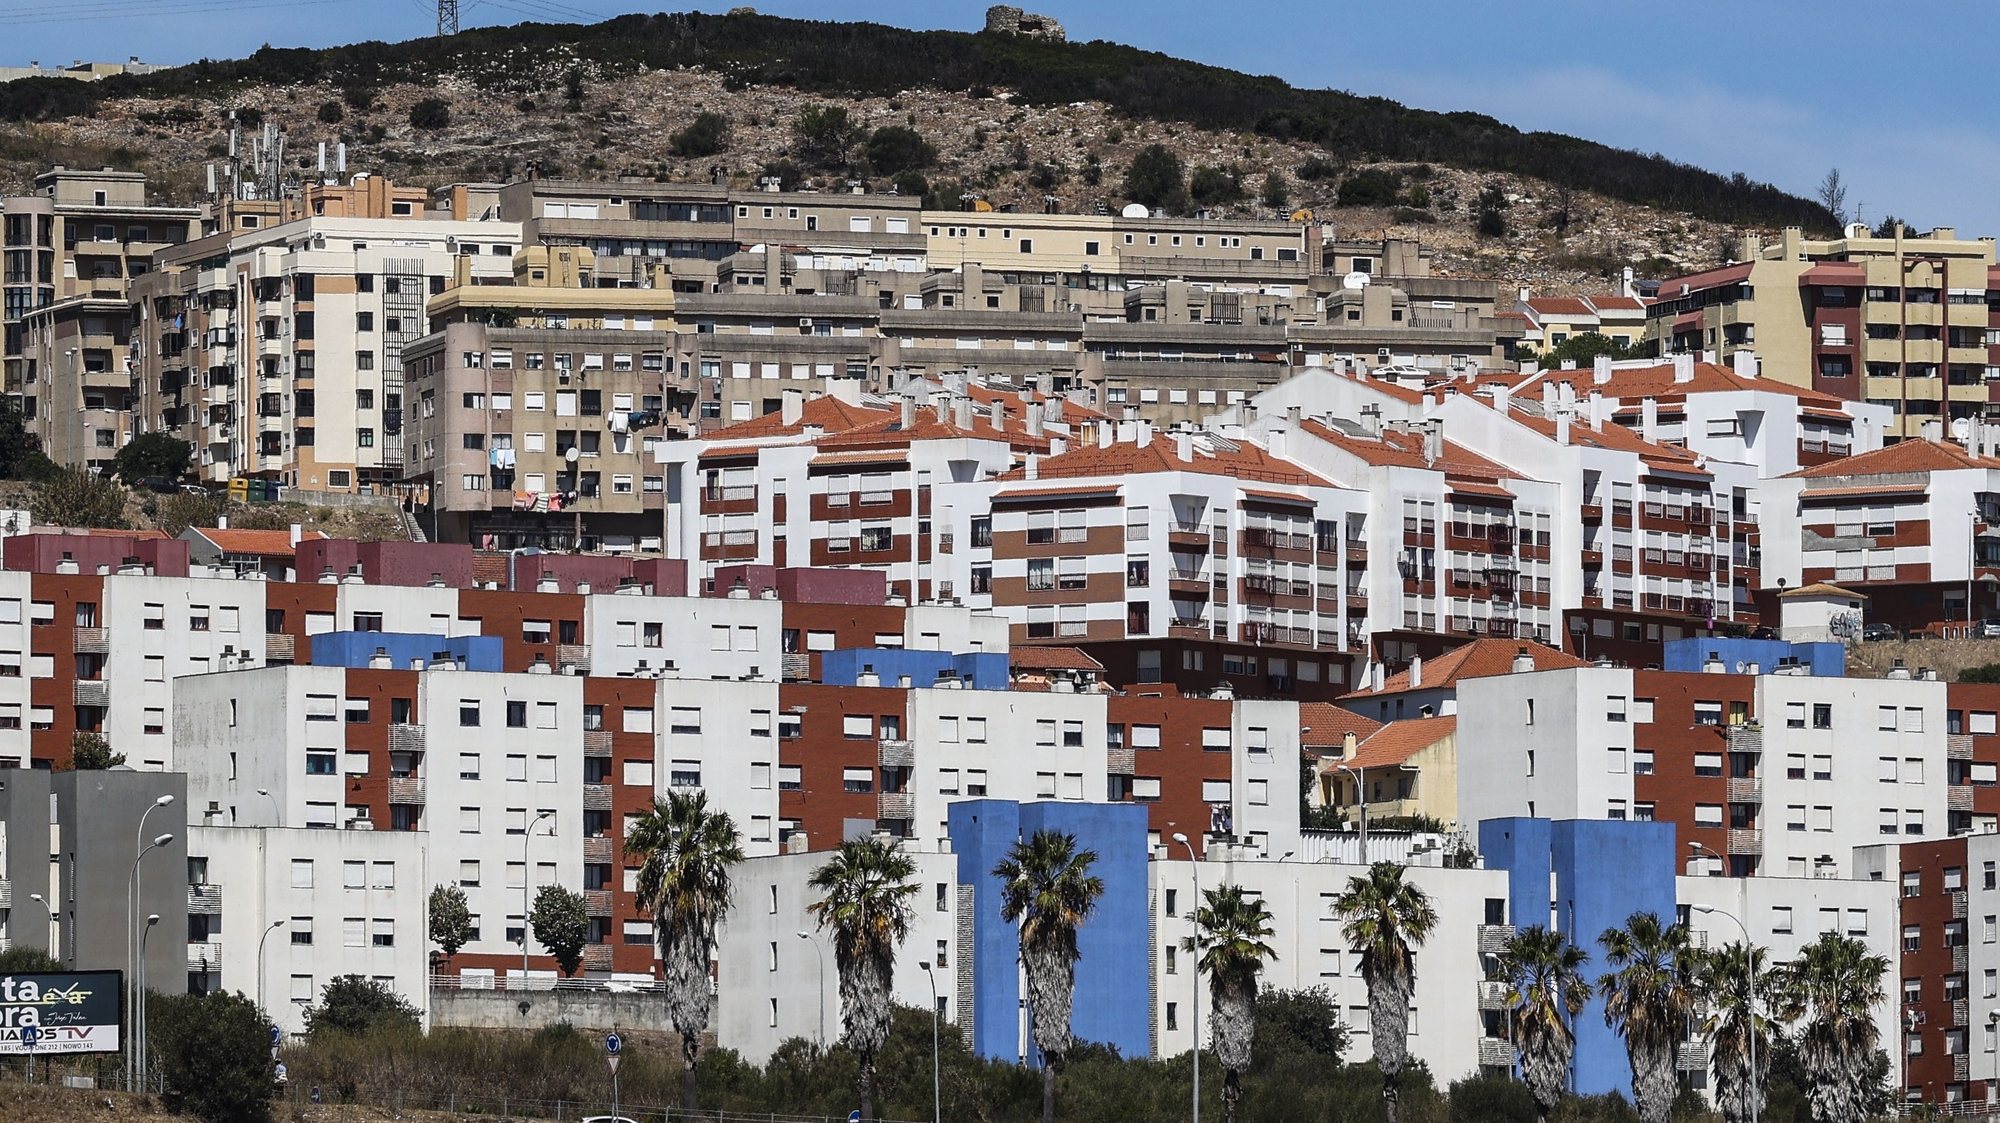 Prédios para habitação própria, arendar, vender ou alugar no distrito de Lisboa, 31 de agosto de 2023. MIGUEL A. LOPES/LUSA